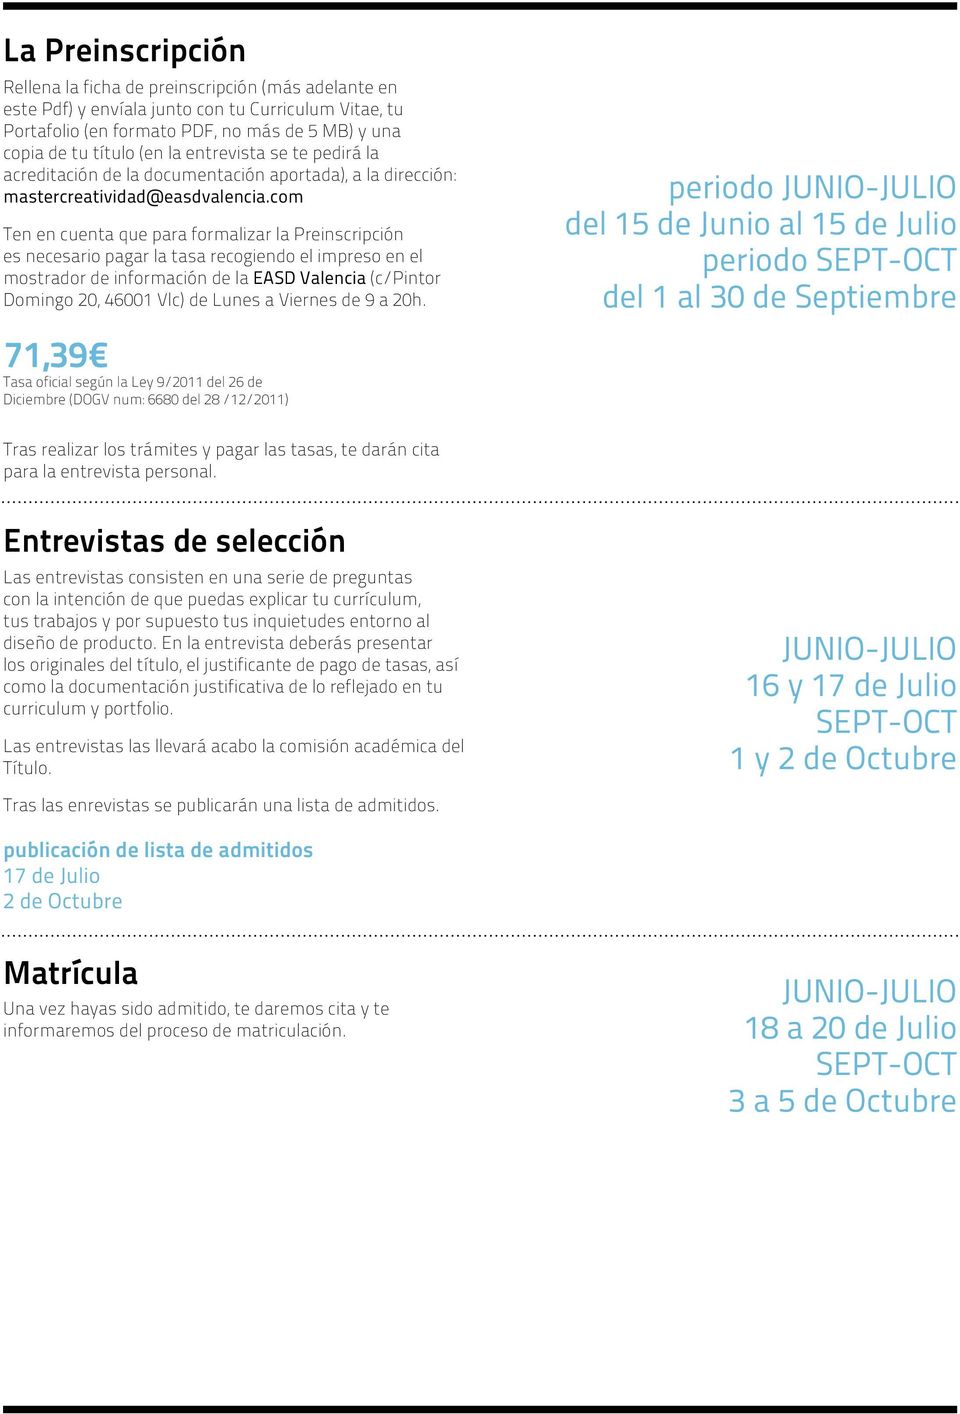 mostrador de información de la EASD Valencia (c/pintor Domingo 20, 46001 Vlc) de Lunes a Viernes de 9 a 20h.